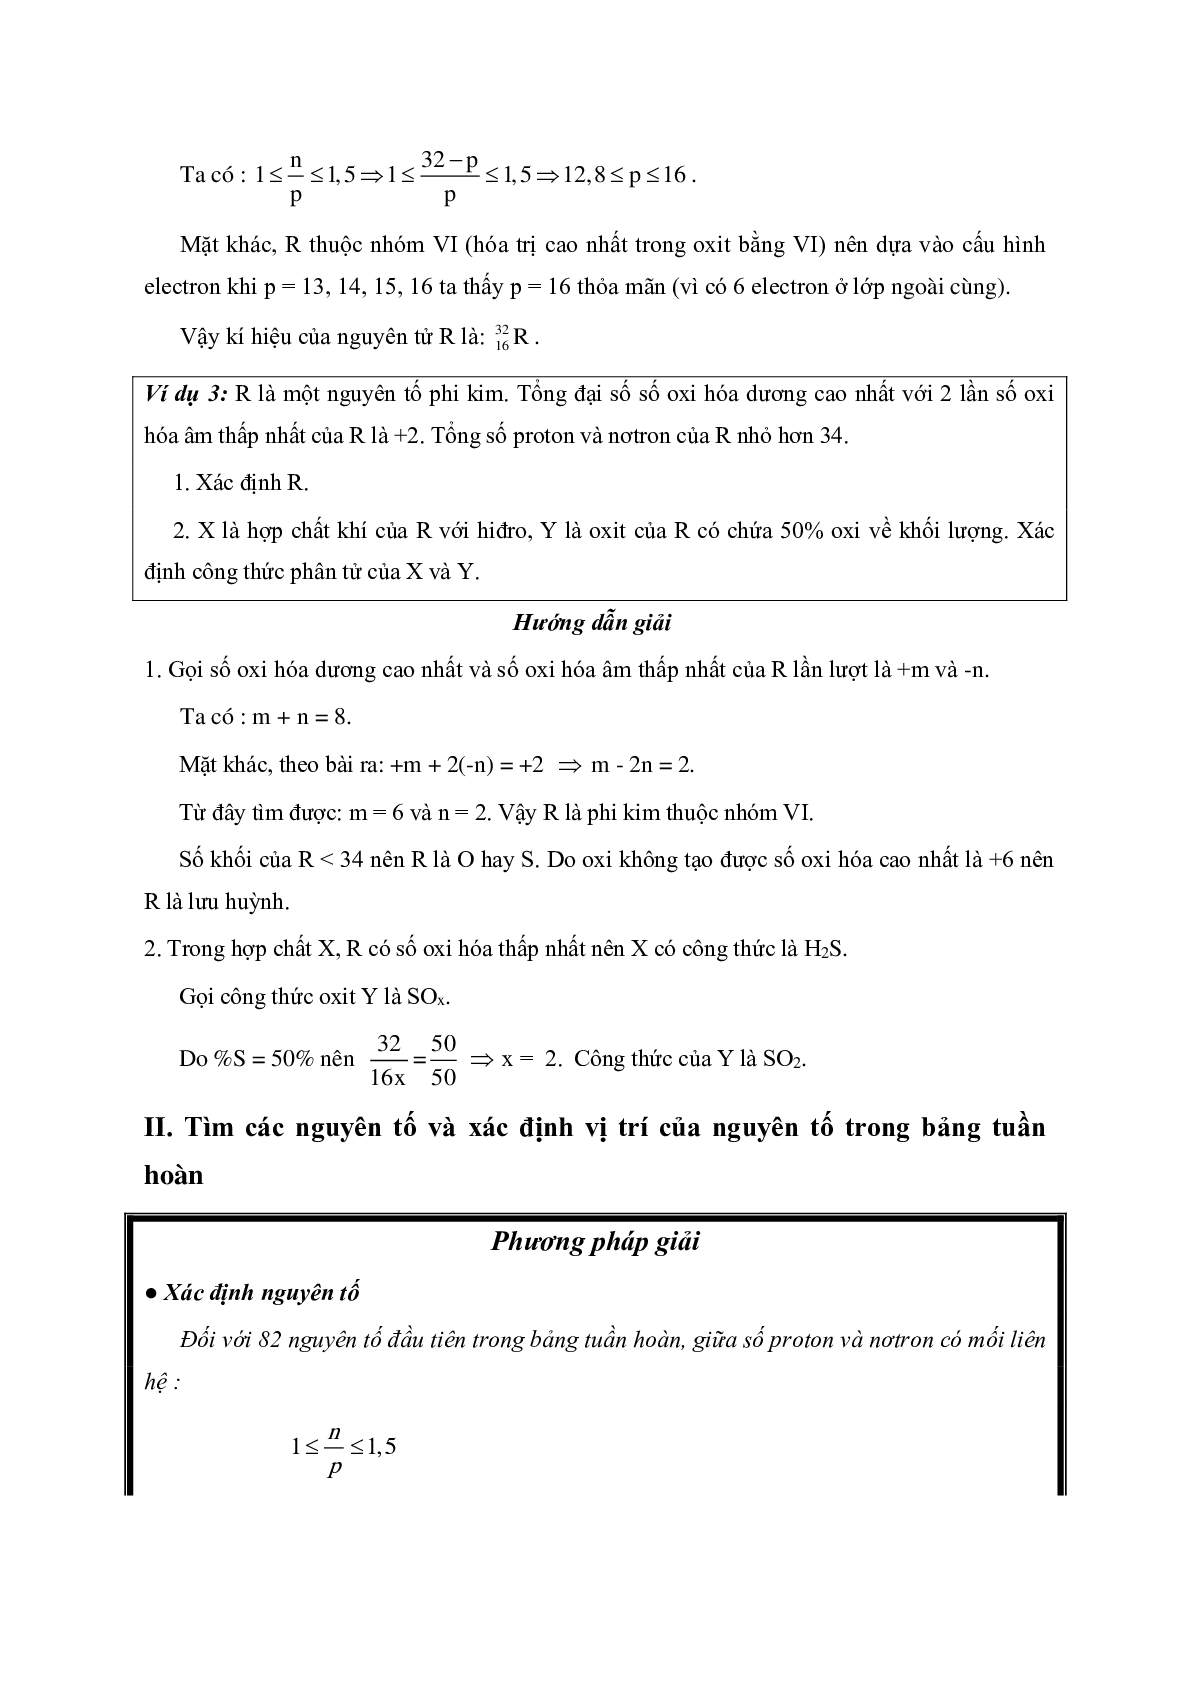 Lý thuyết và bài tập trắc nghiệm Chương Bảng tuần hoàn môn Hóa lớp 10 có đáp án (trang 7)